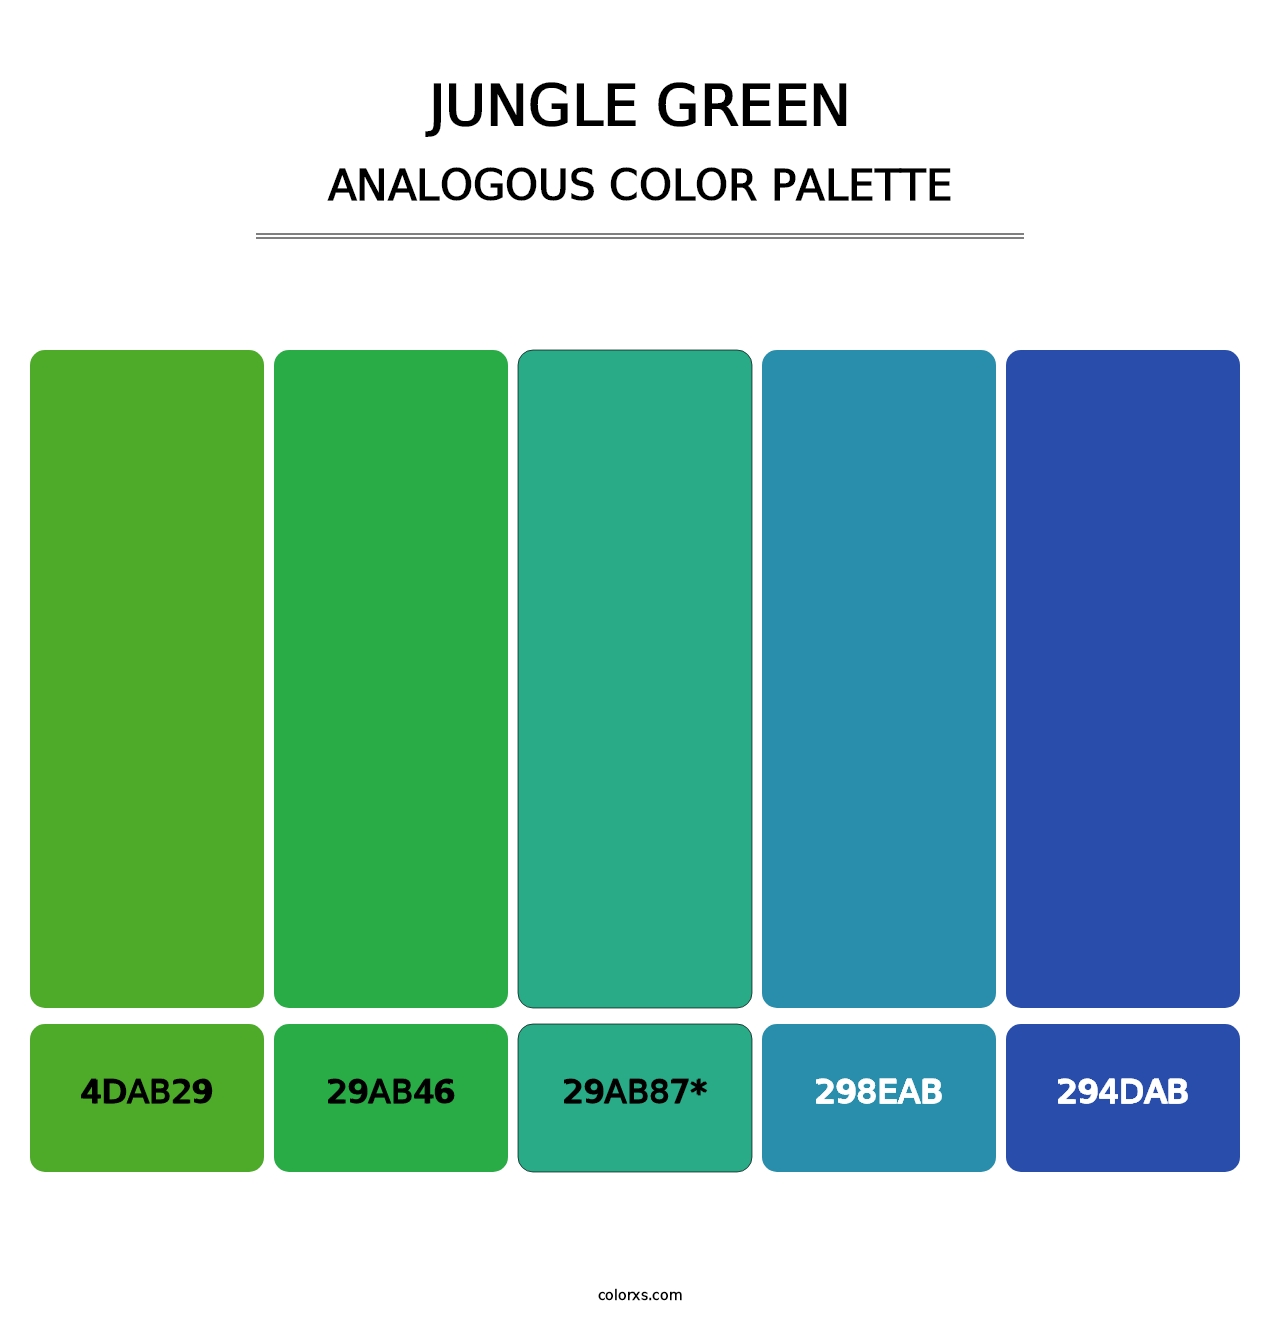 Jungle Green - Analogous Color Palette